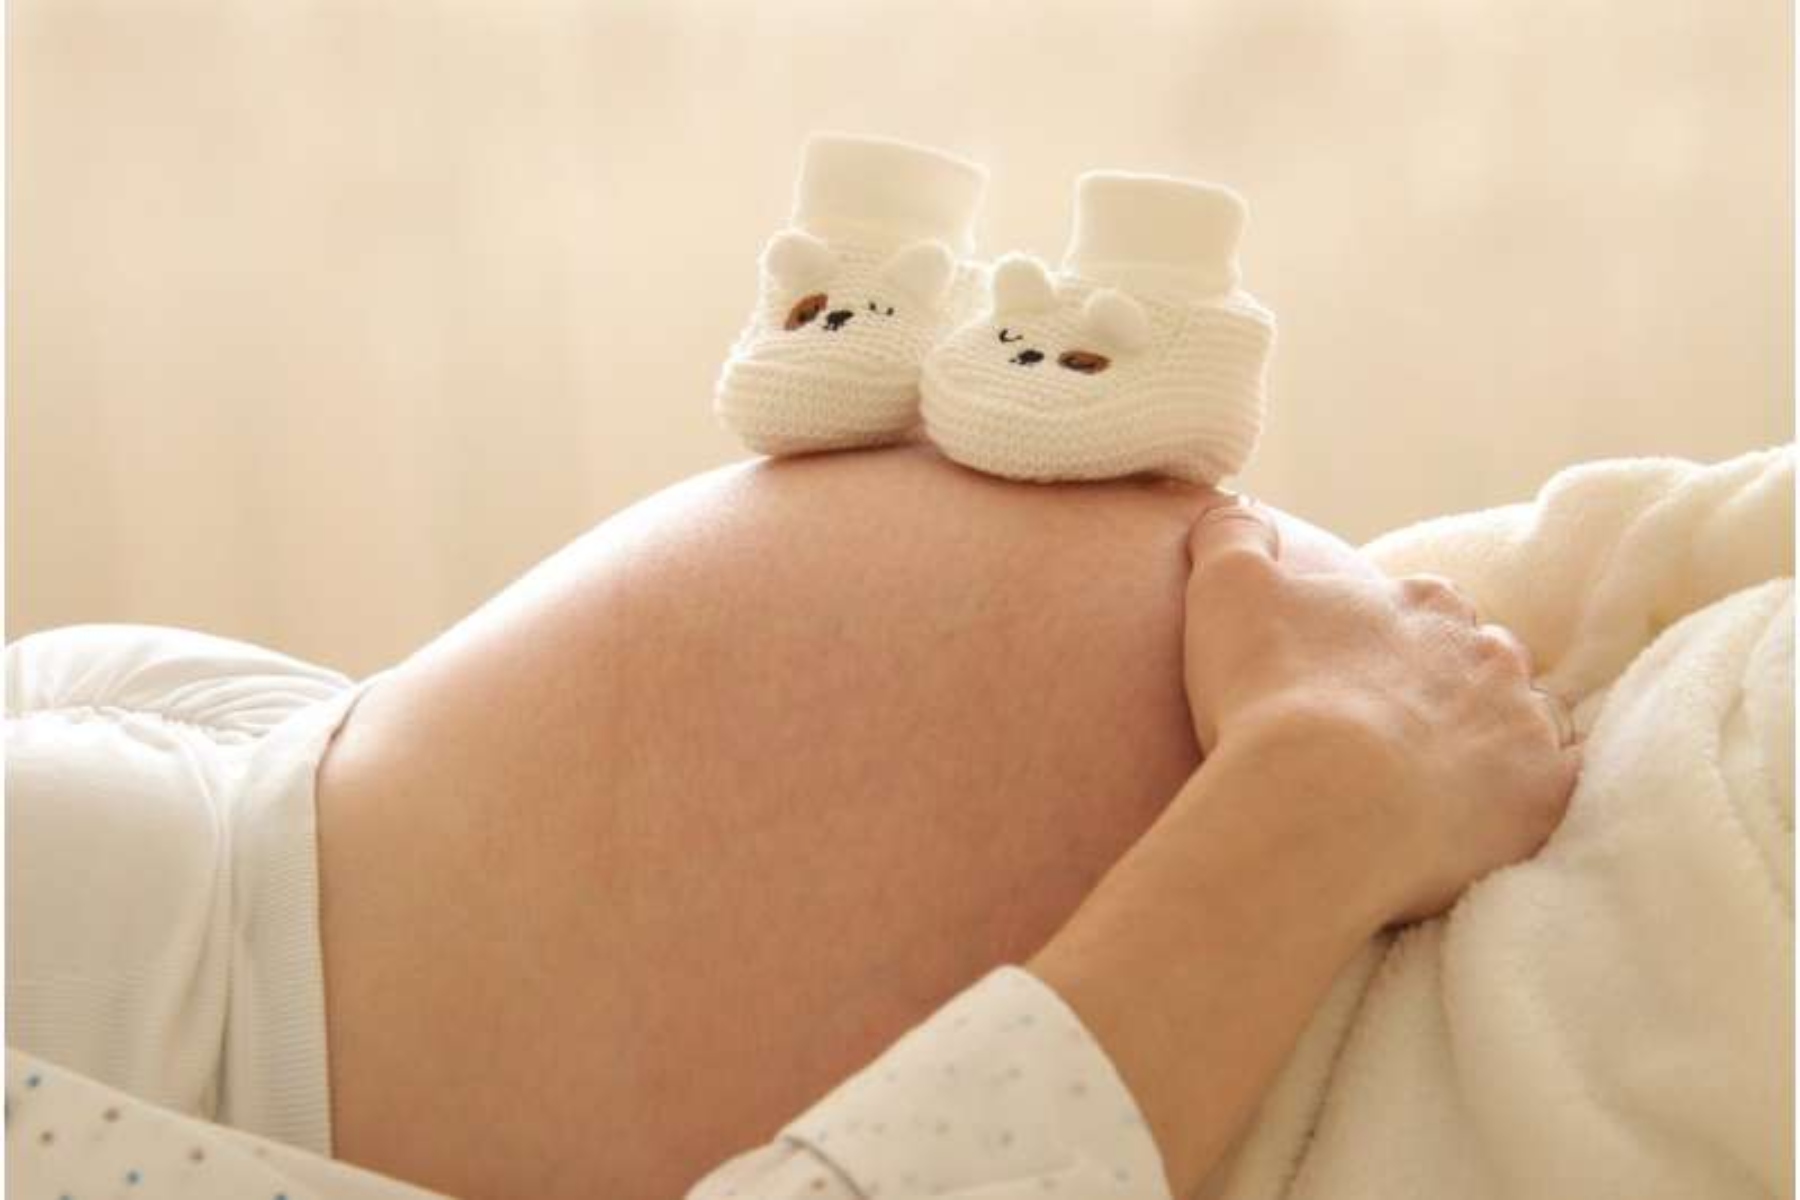 Εγκυμοσύνη ανορεξία: Πρώτες παγκόσμιες οδηγίες για διαχείριση του ζητήματος